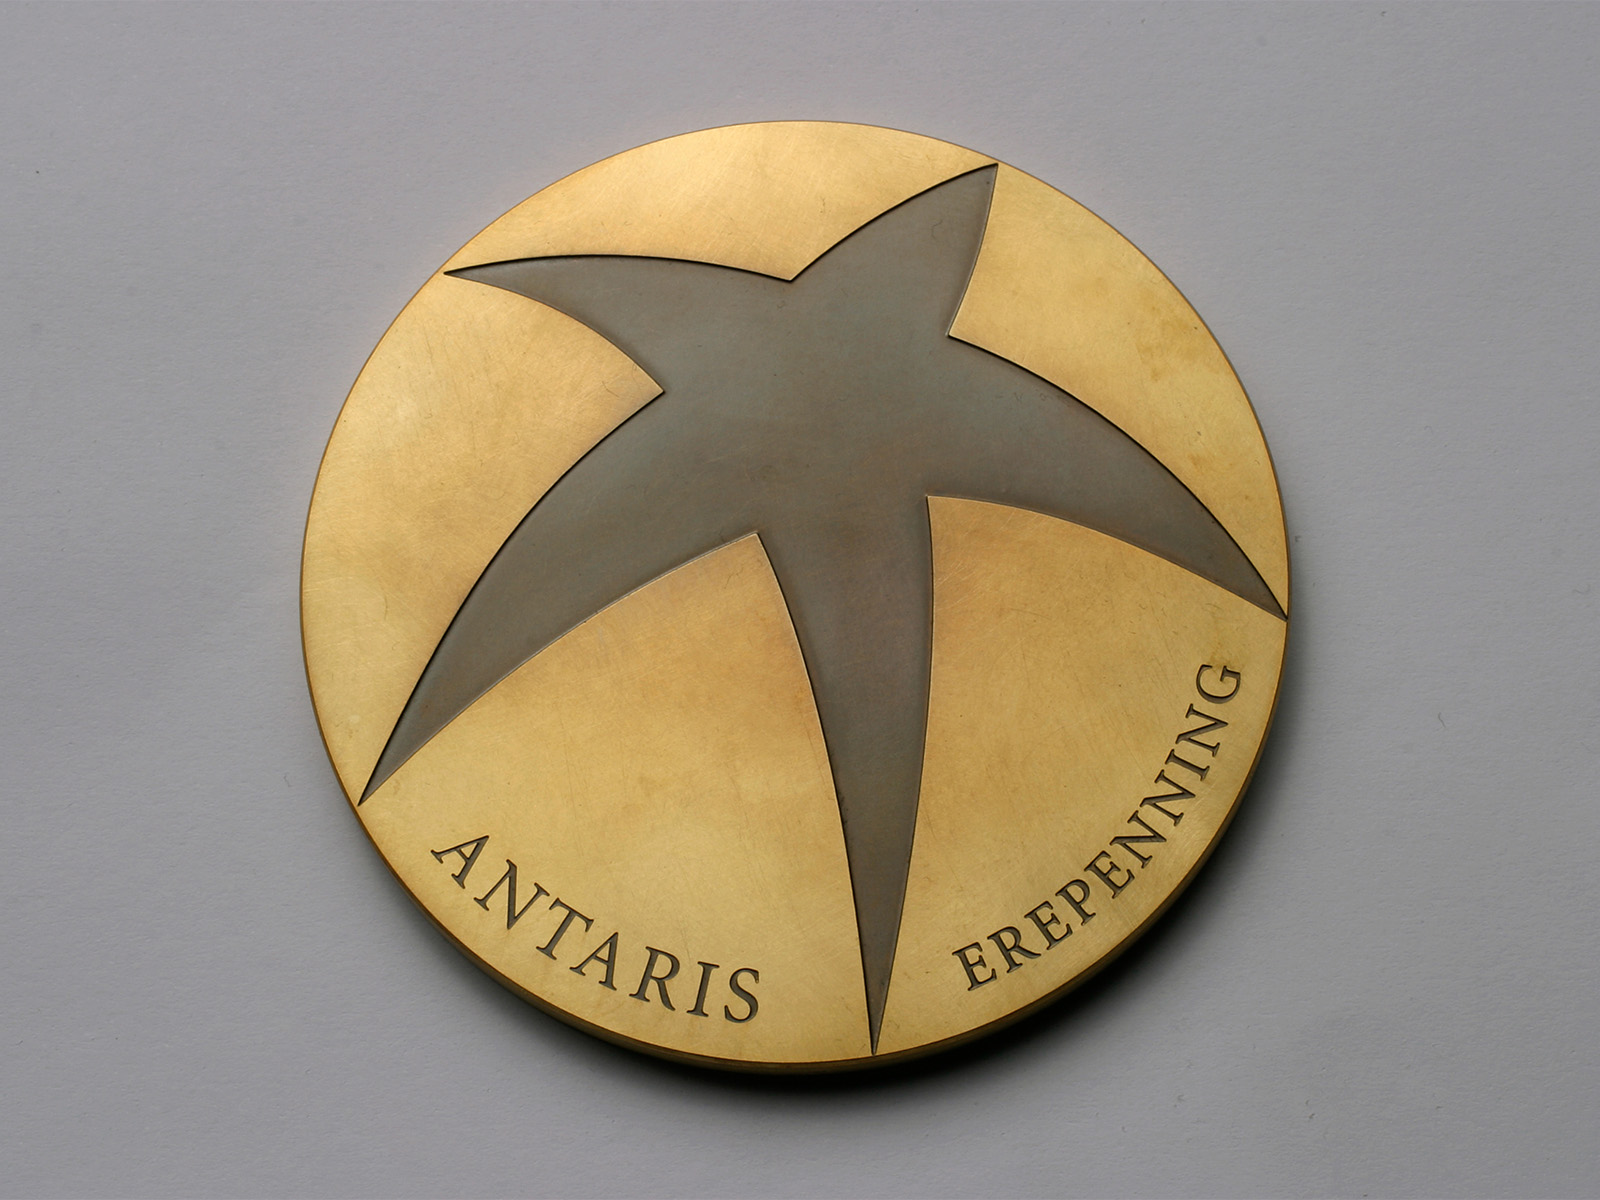 Antaris coin of honour